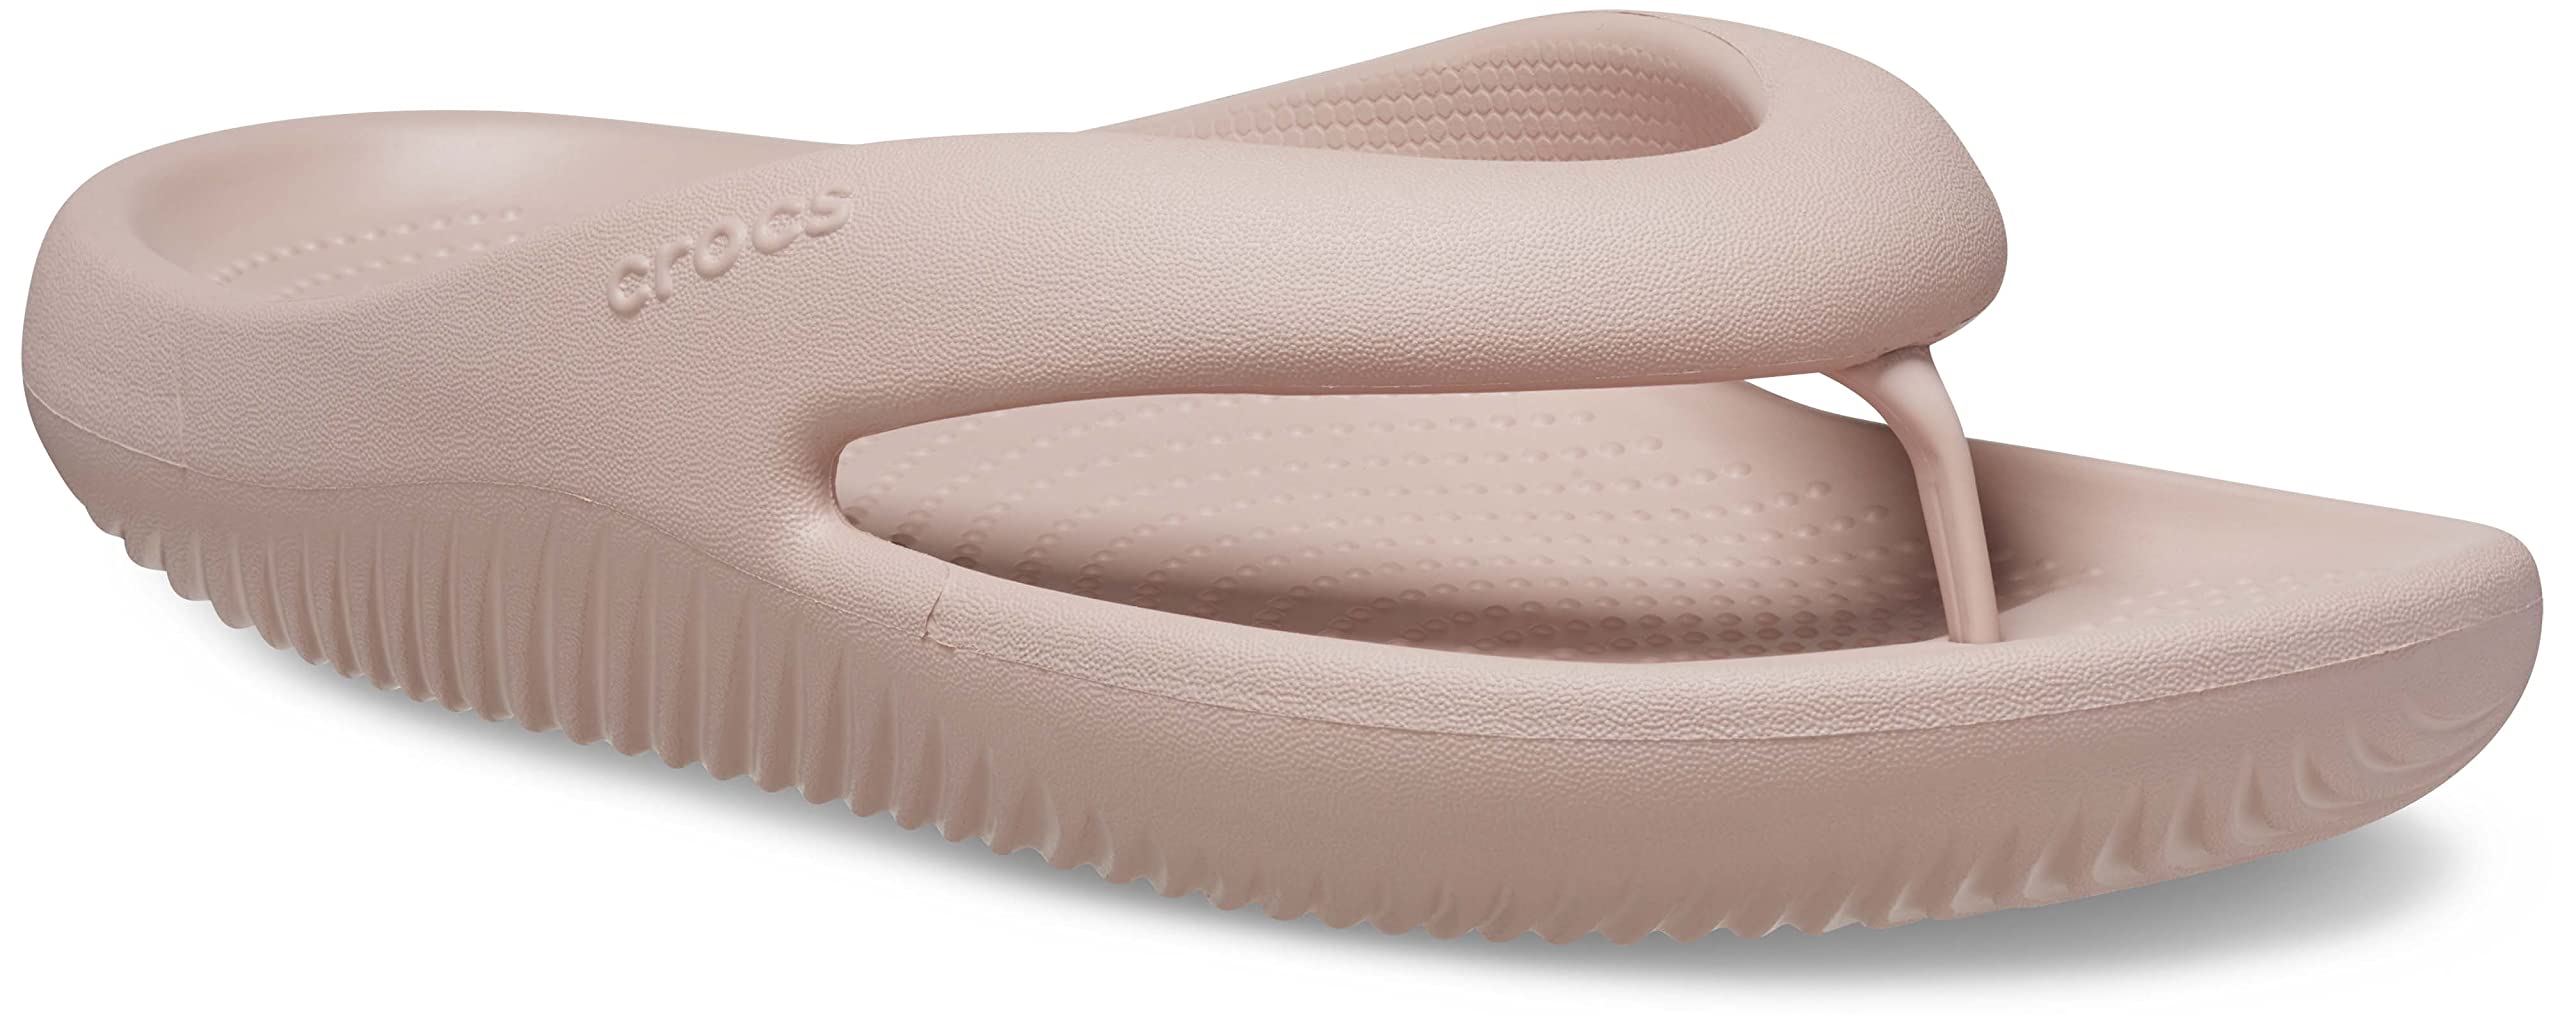 Crocs unisex-adult Mellow Flip Flops, Recovery Flip Flop Slides